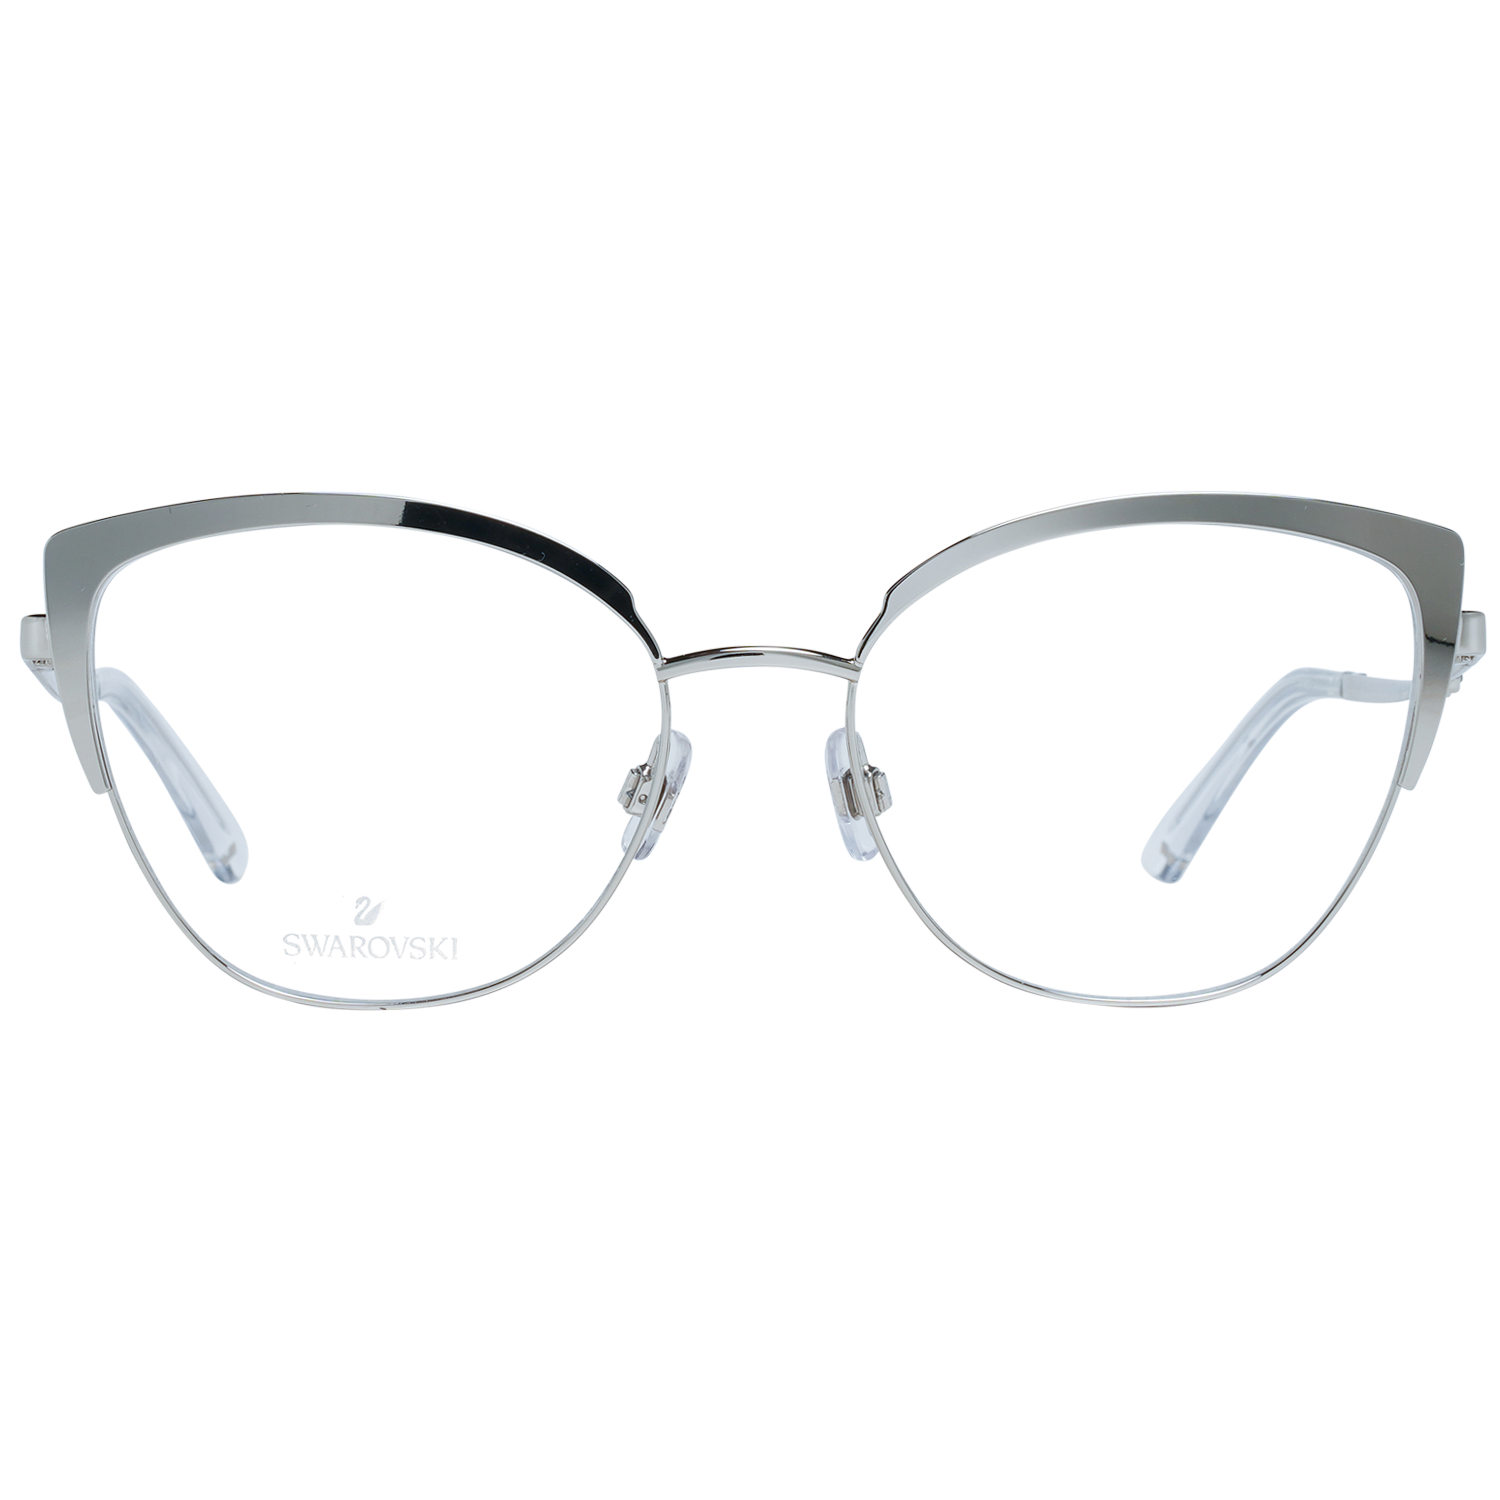 Swarovski Frames Swarovski Women Glasses Optical Frame SK5402 016 54 Eyeglasses Eyewear UK USA Australia 